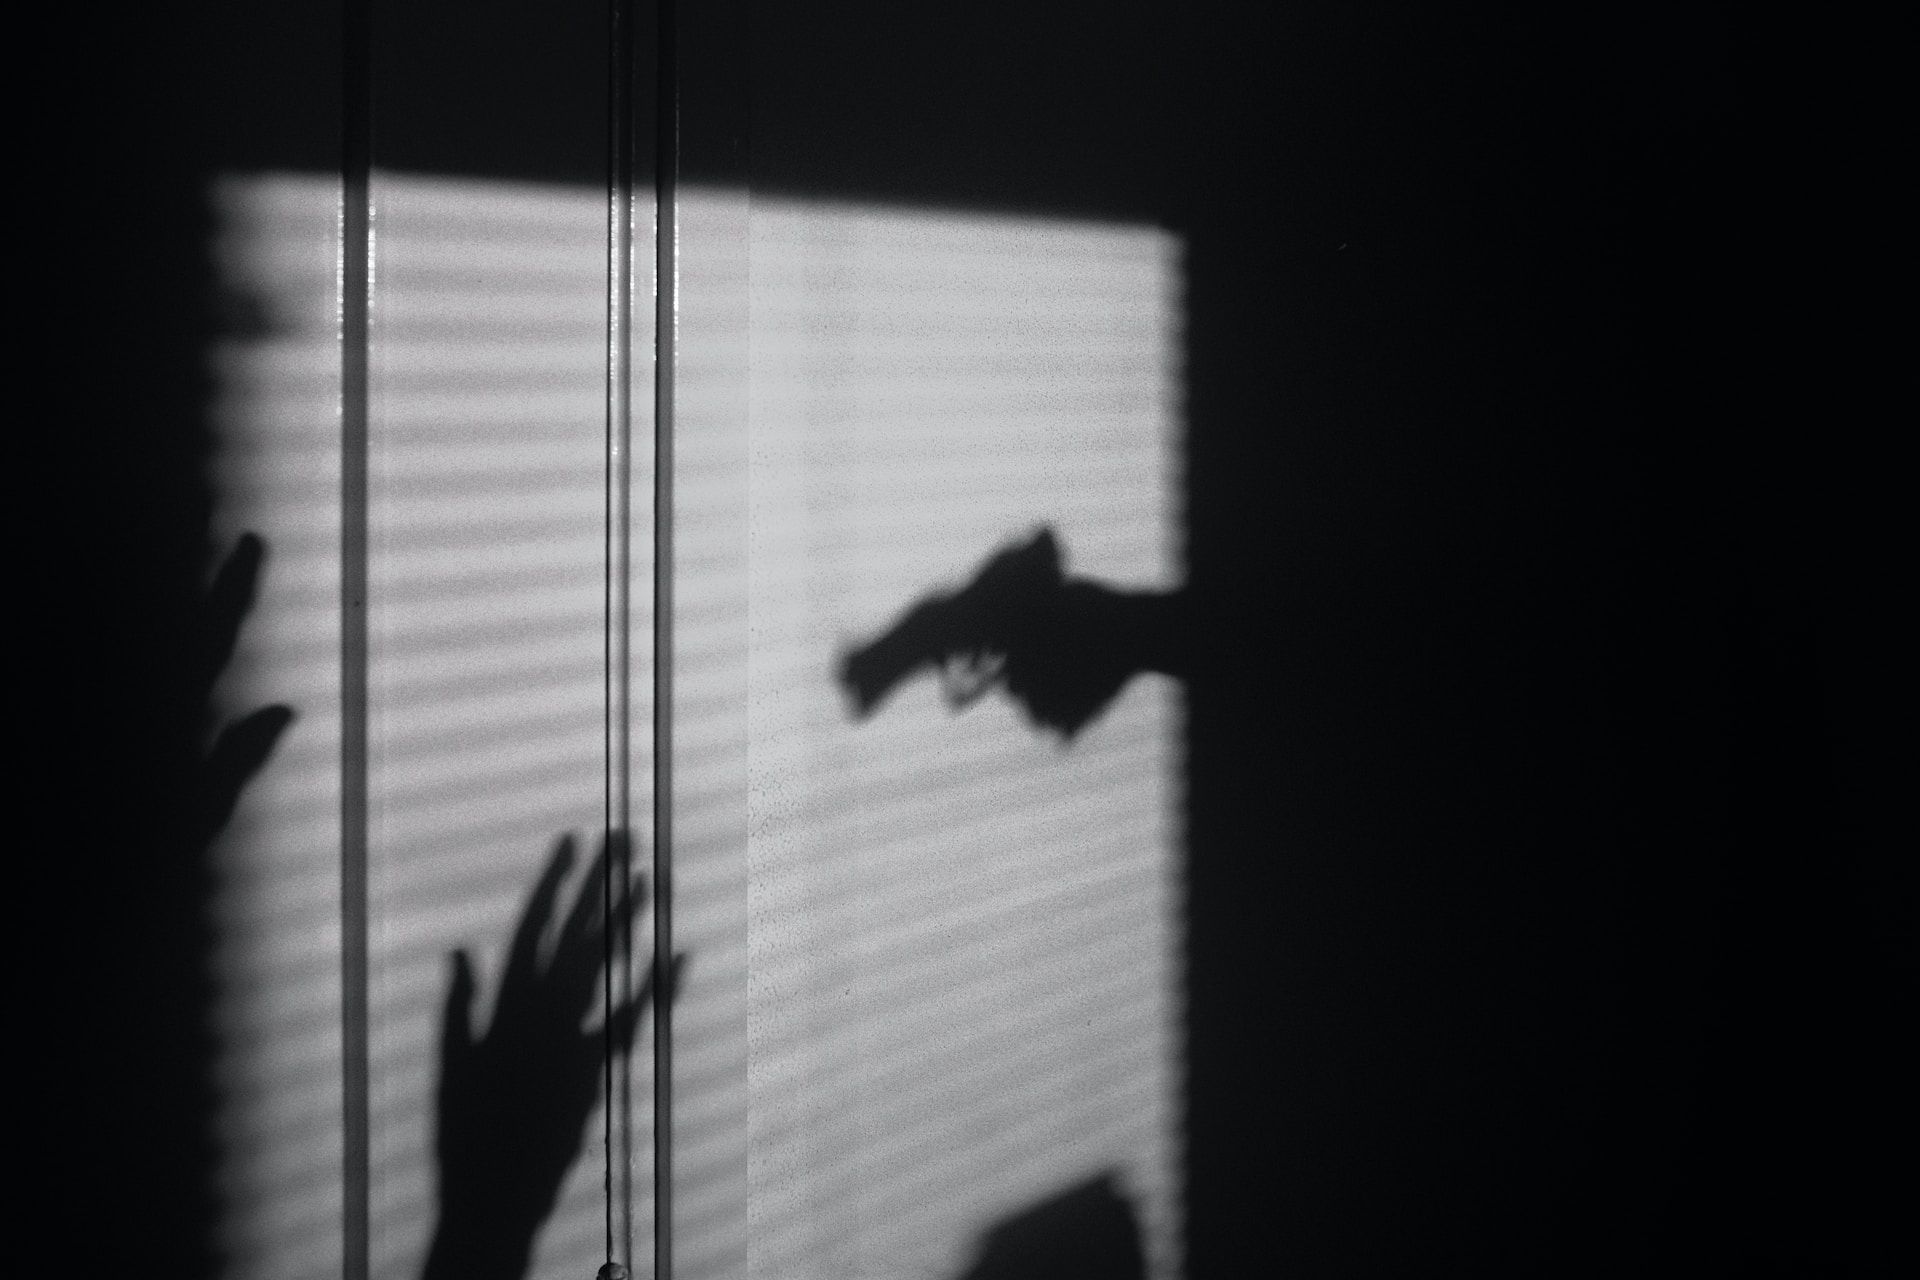 Ombre d'une main tenant un pistolet menaçant une victime - Photo de Maxim Hopman sur https://unsplash.com/fr/photos/PEJHULxUHZs